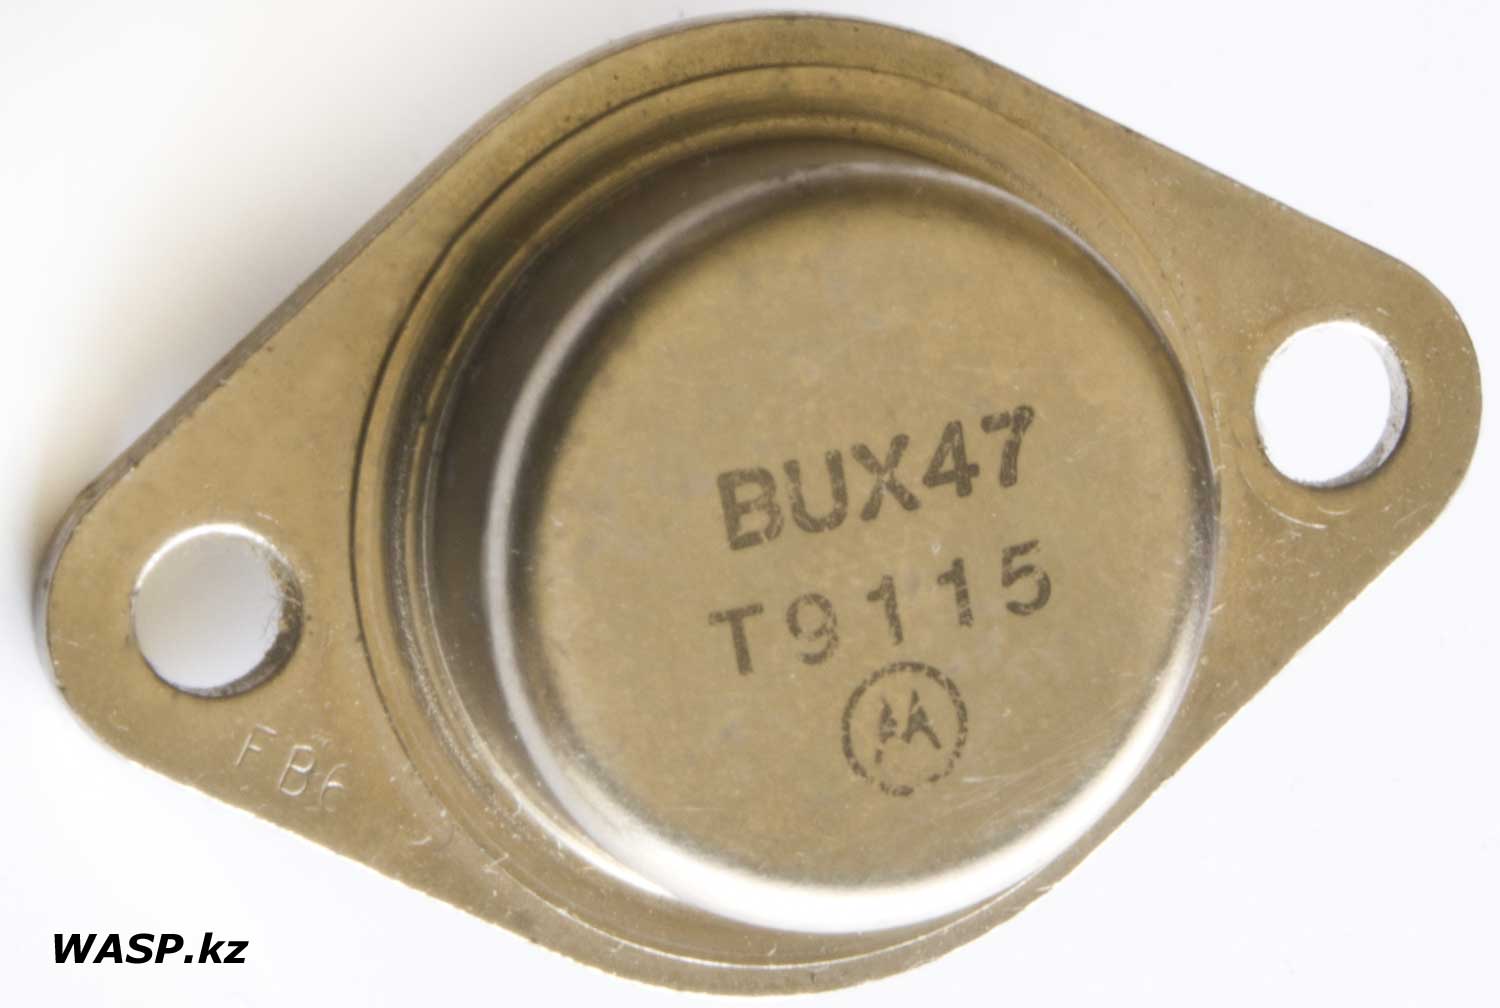 транзистор BUX47 описание и где применяется, с логотипом Motorola